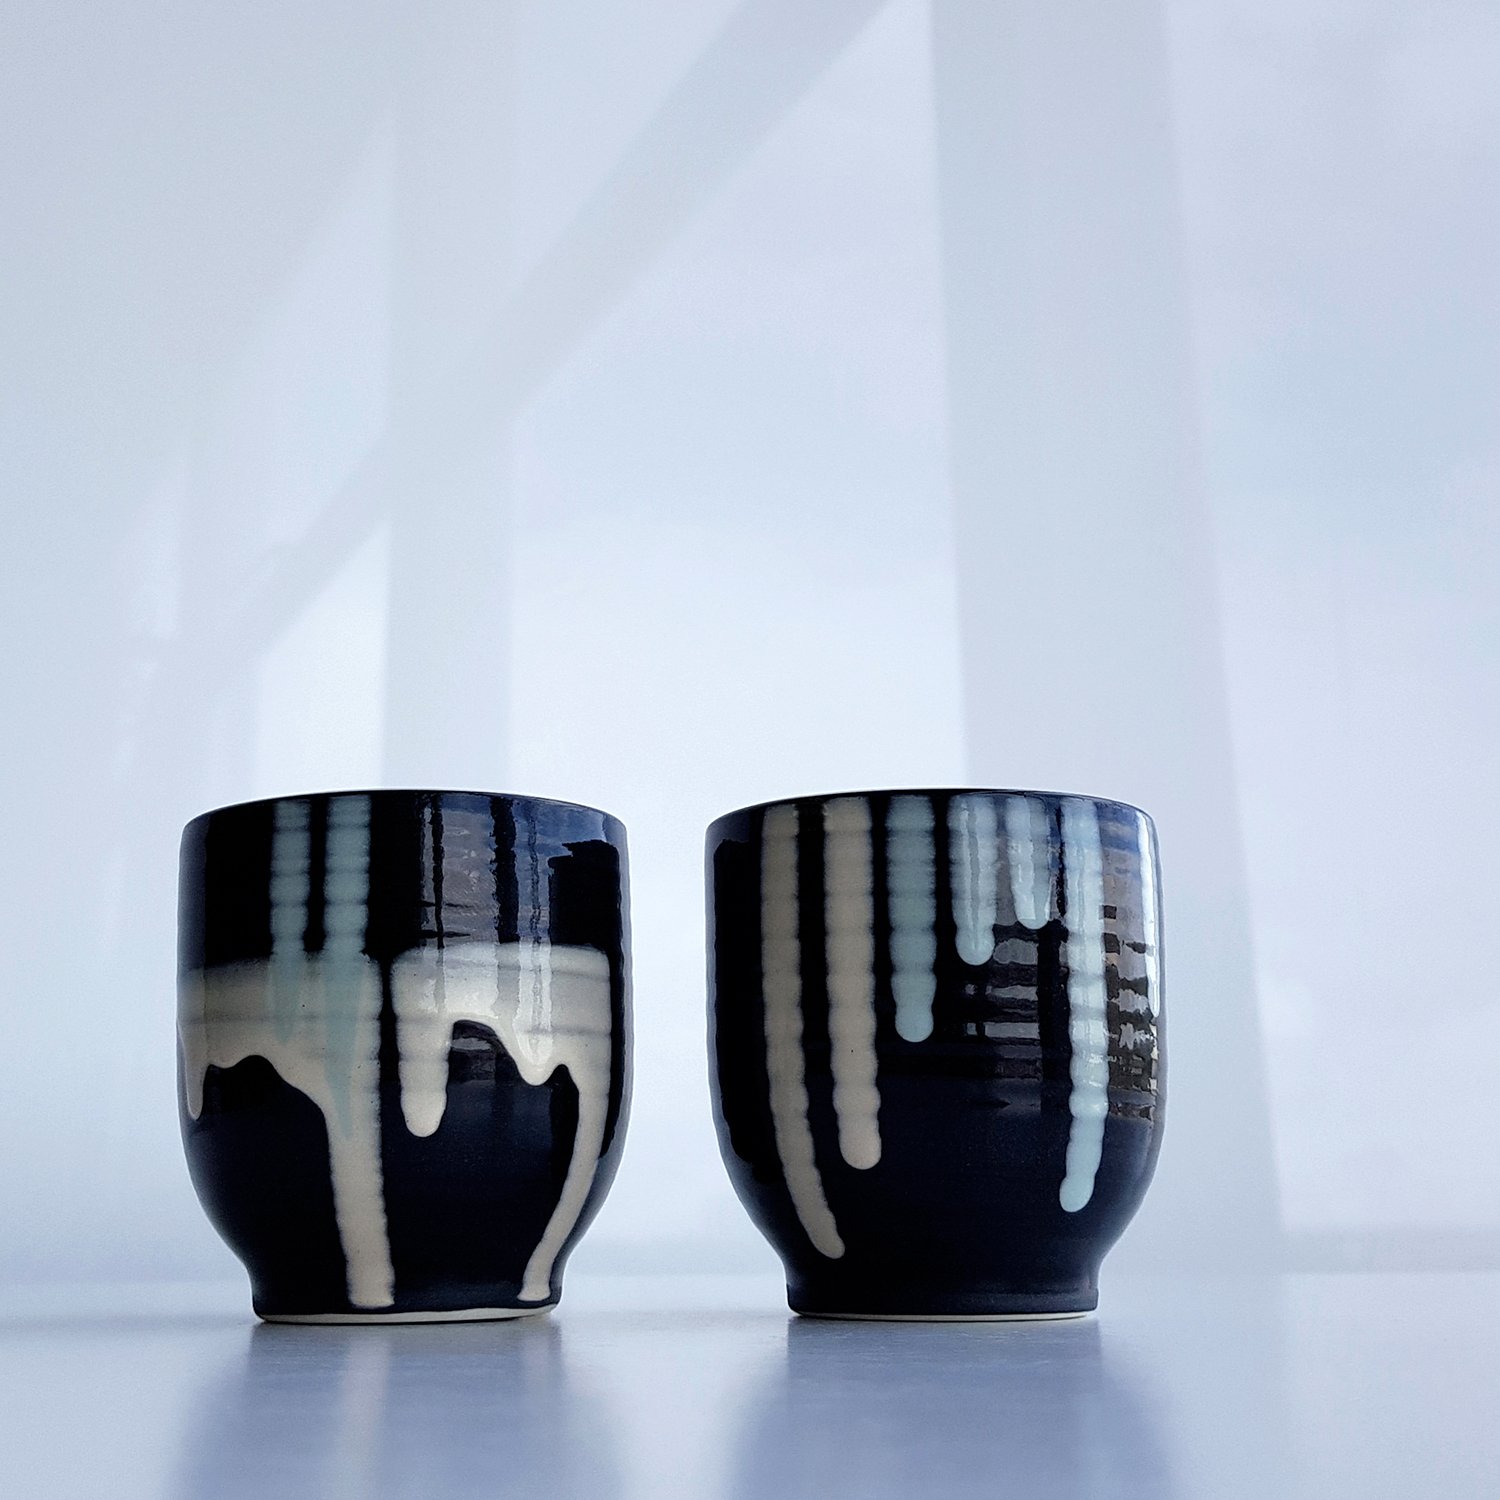 24-25-sake-cups-rowenagilbert.jpg